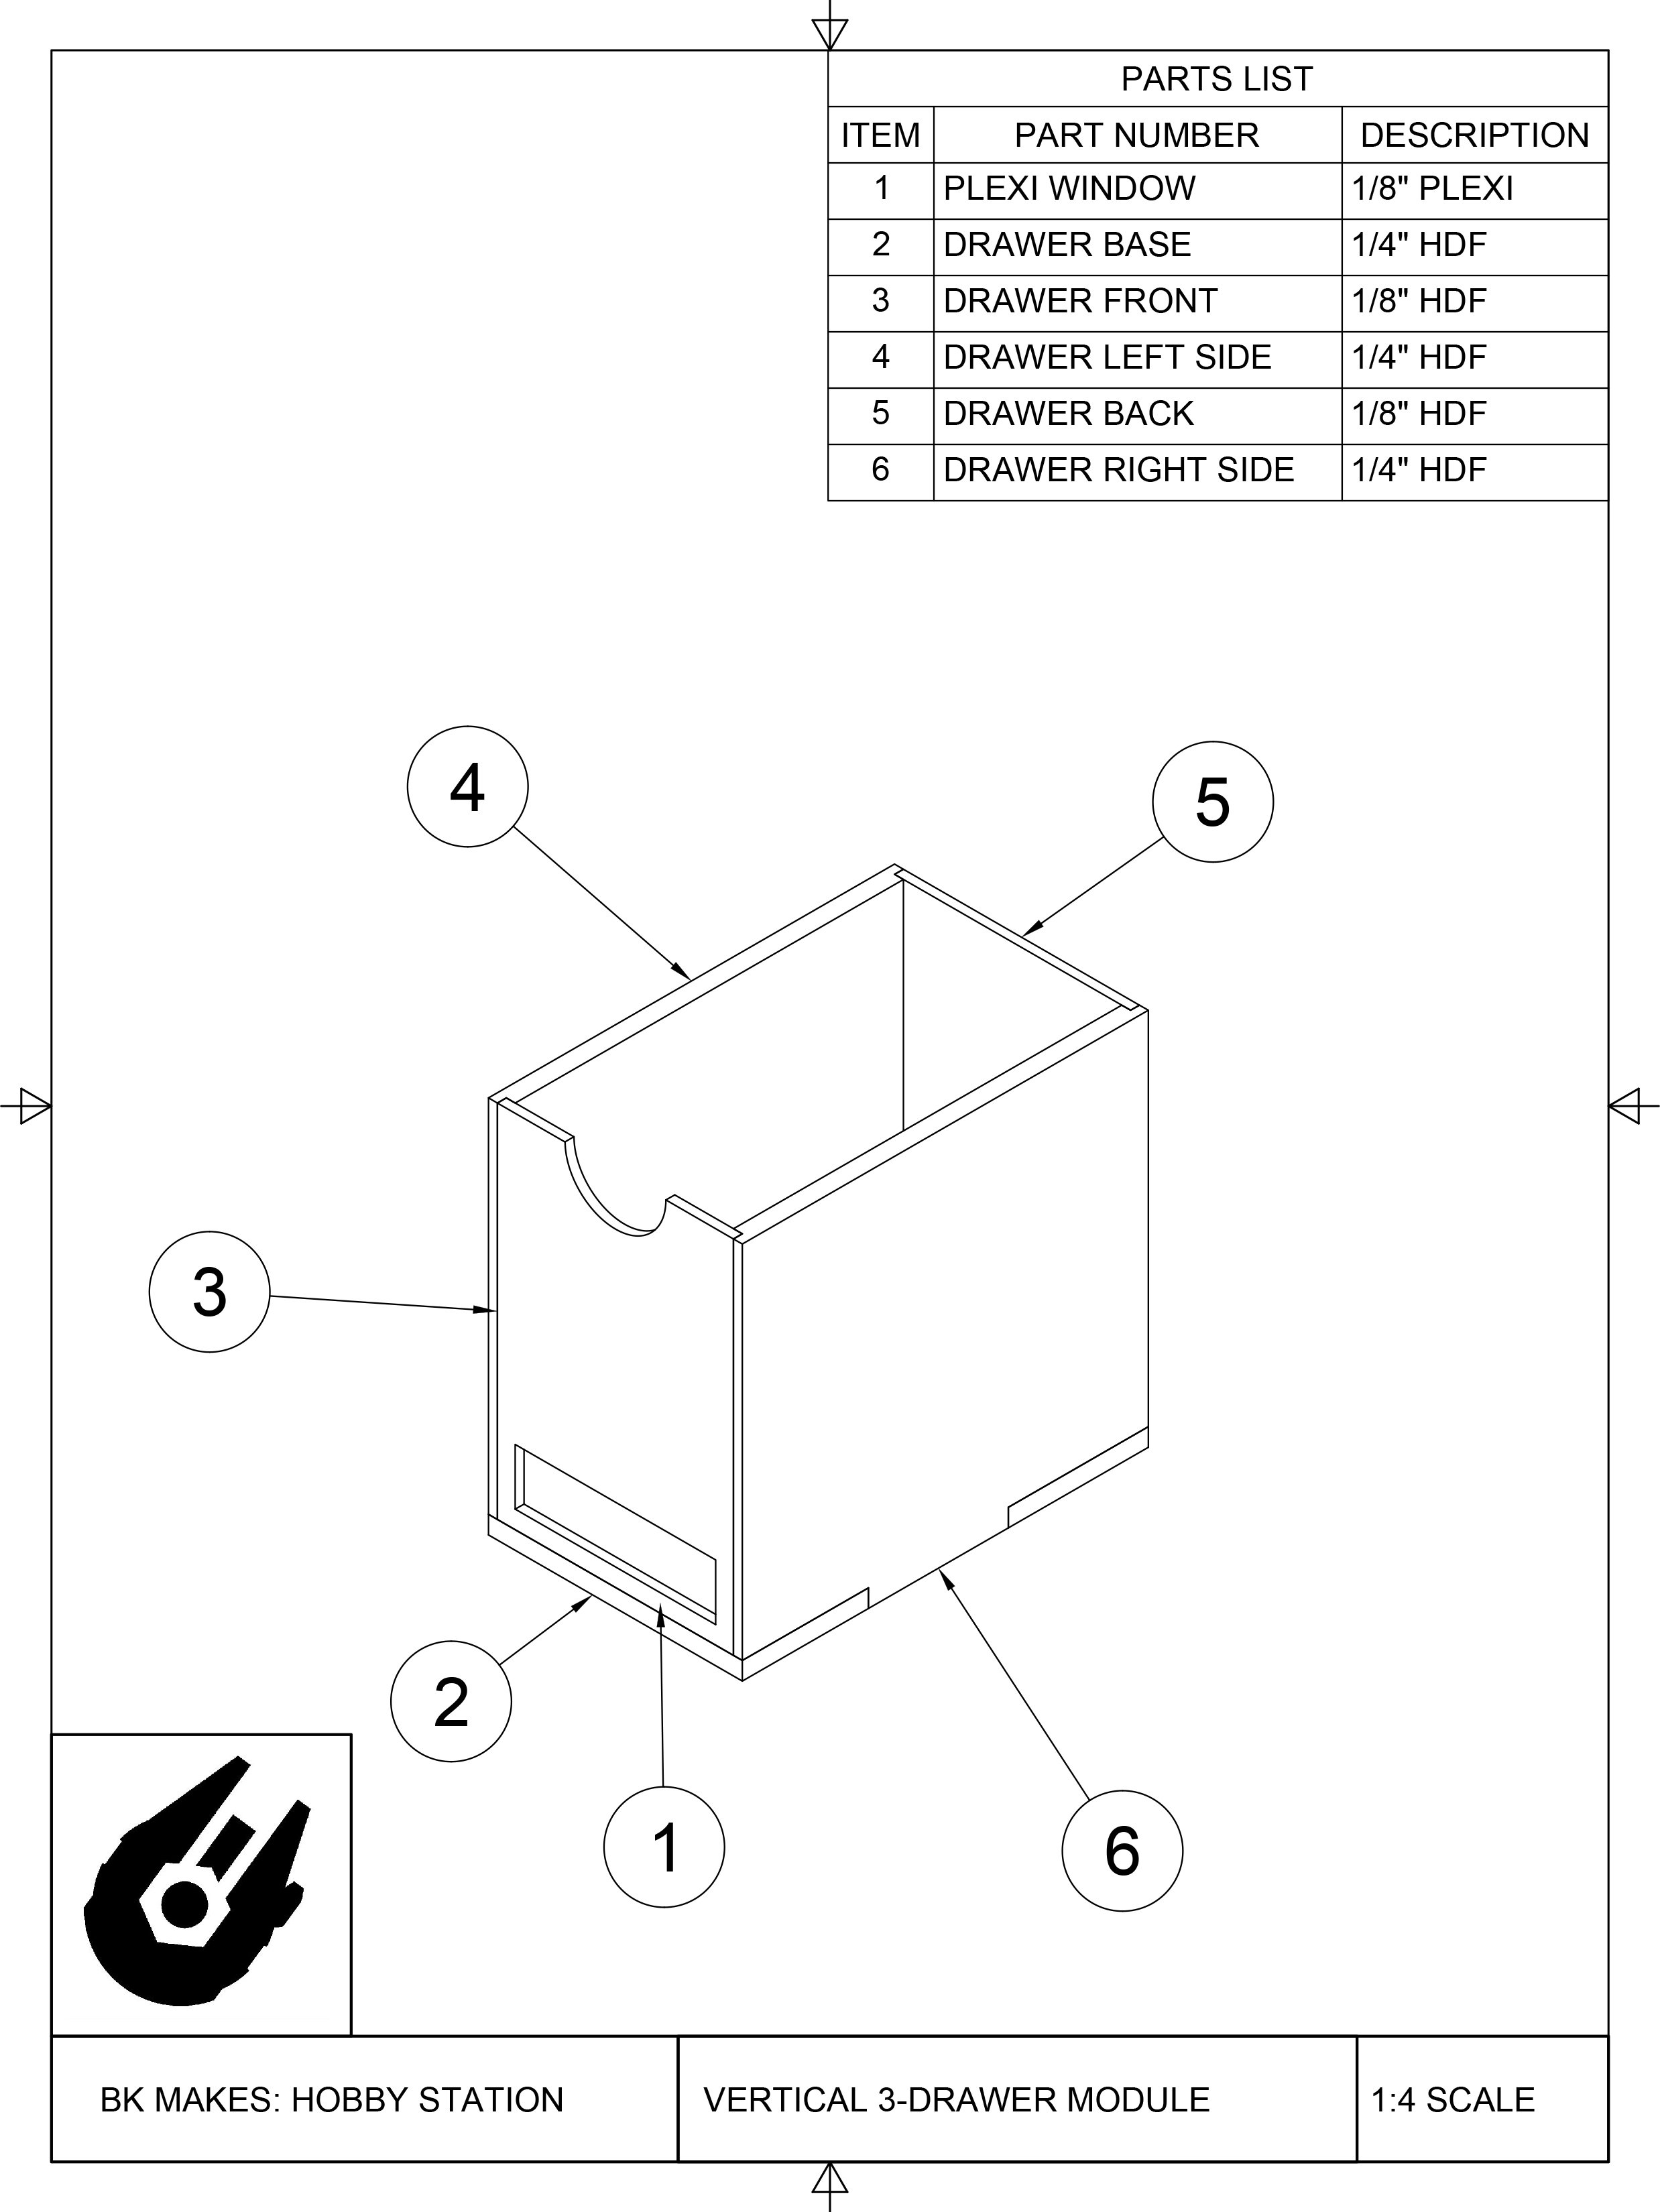 BK MAKES Drawer for Vertical 3-Drawer Module Assembly Sheet.jpg